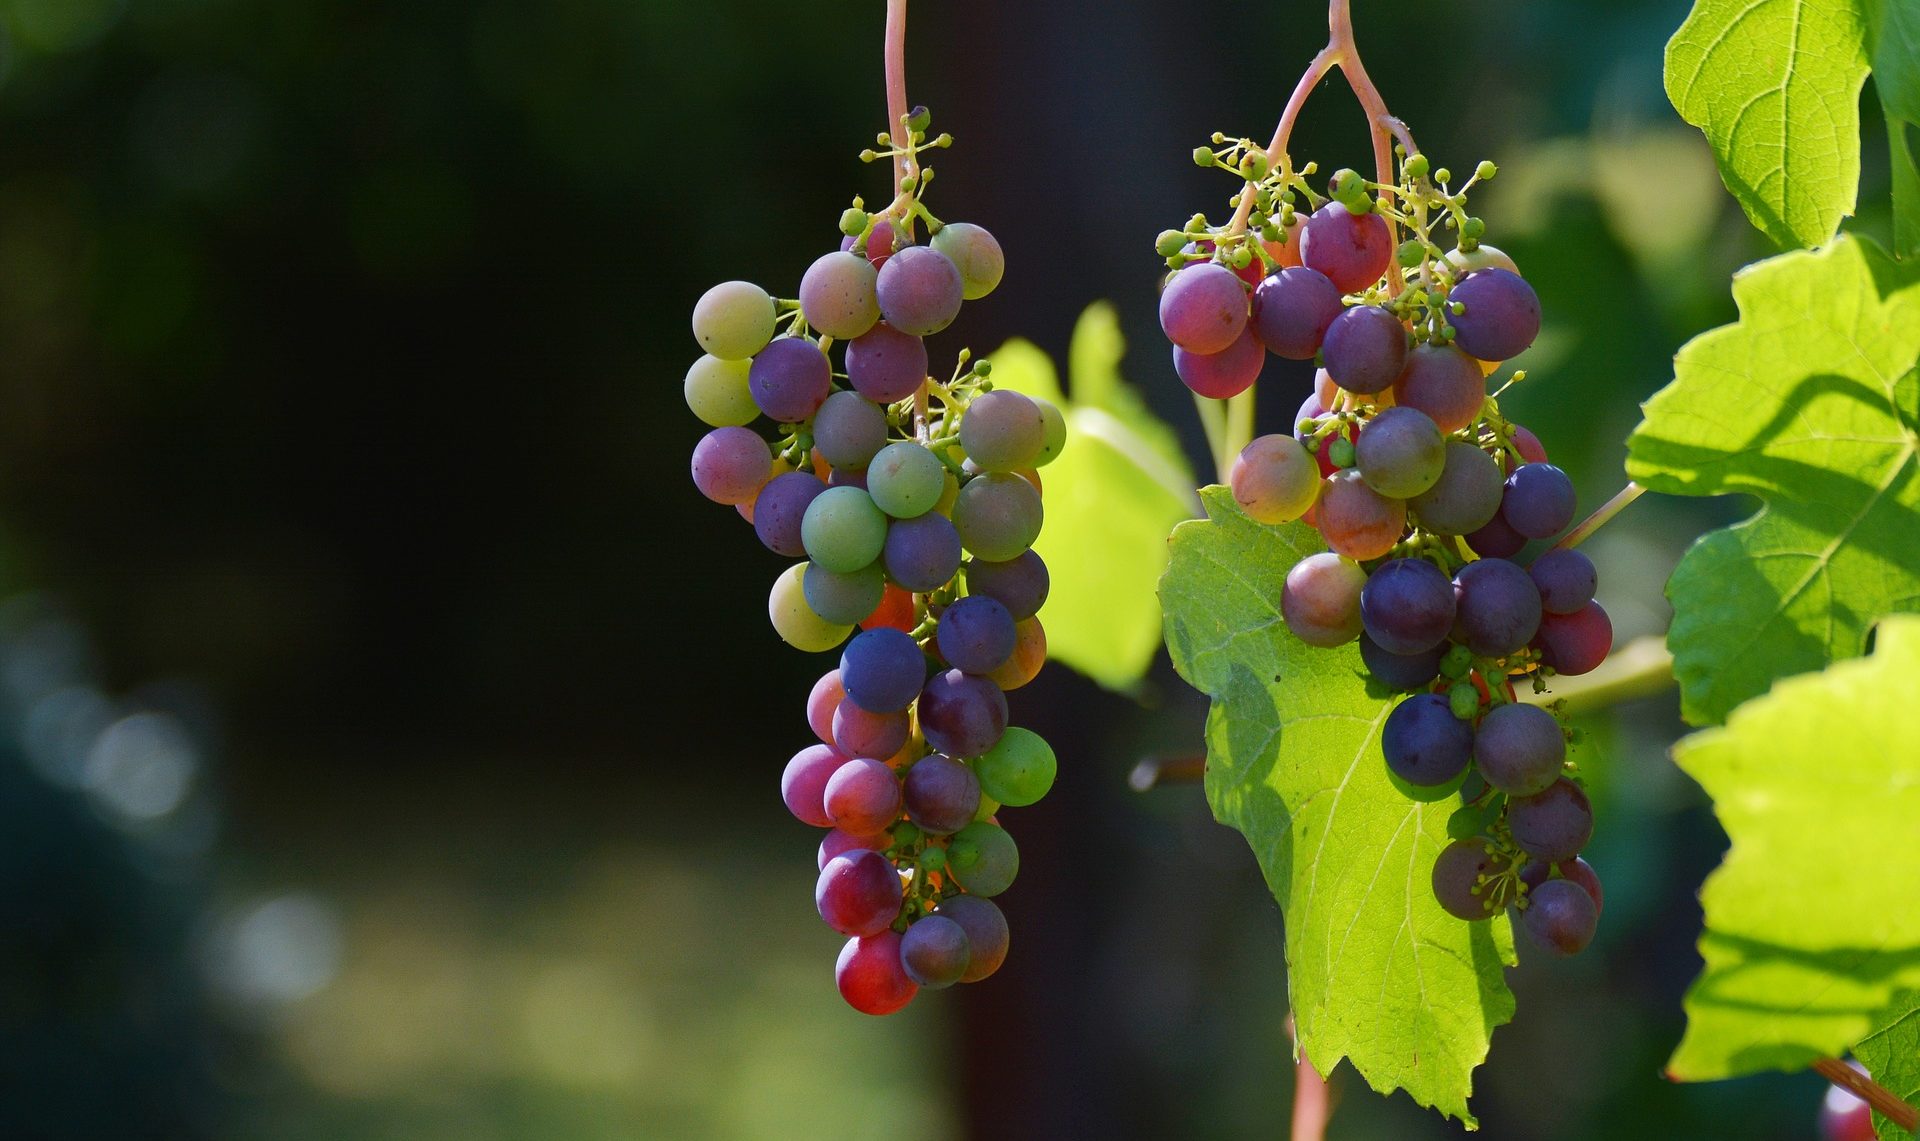 Covid-19 : de nouvelles mesures de soutien exceptionnelles au secteur vitivinicole : (rappel de notre brève du 01/06/2020)